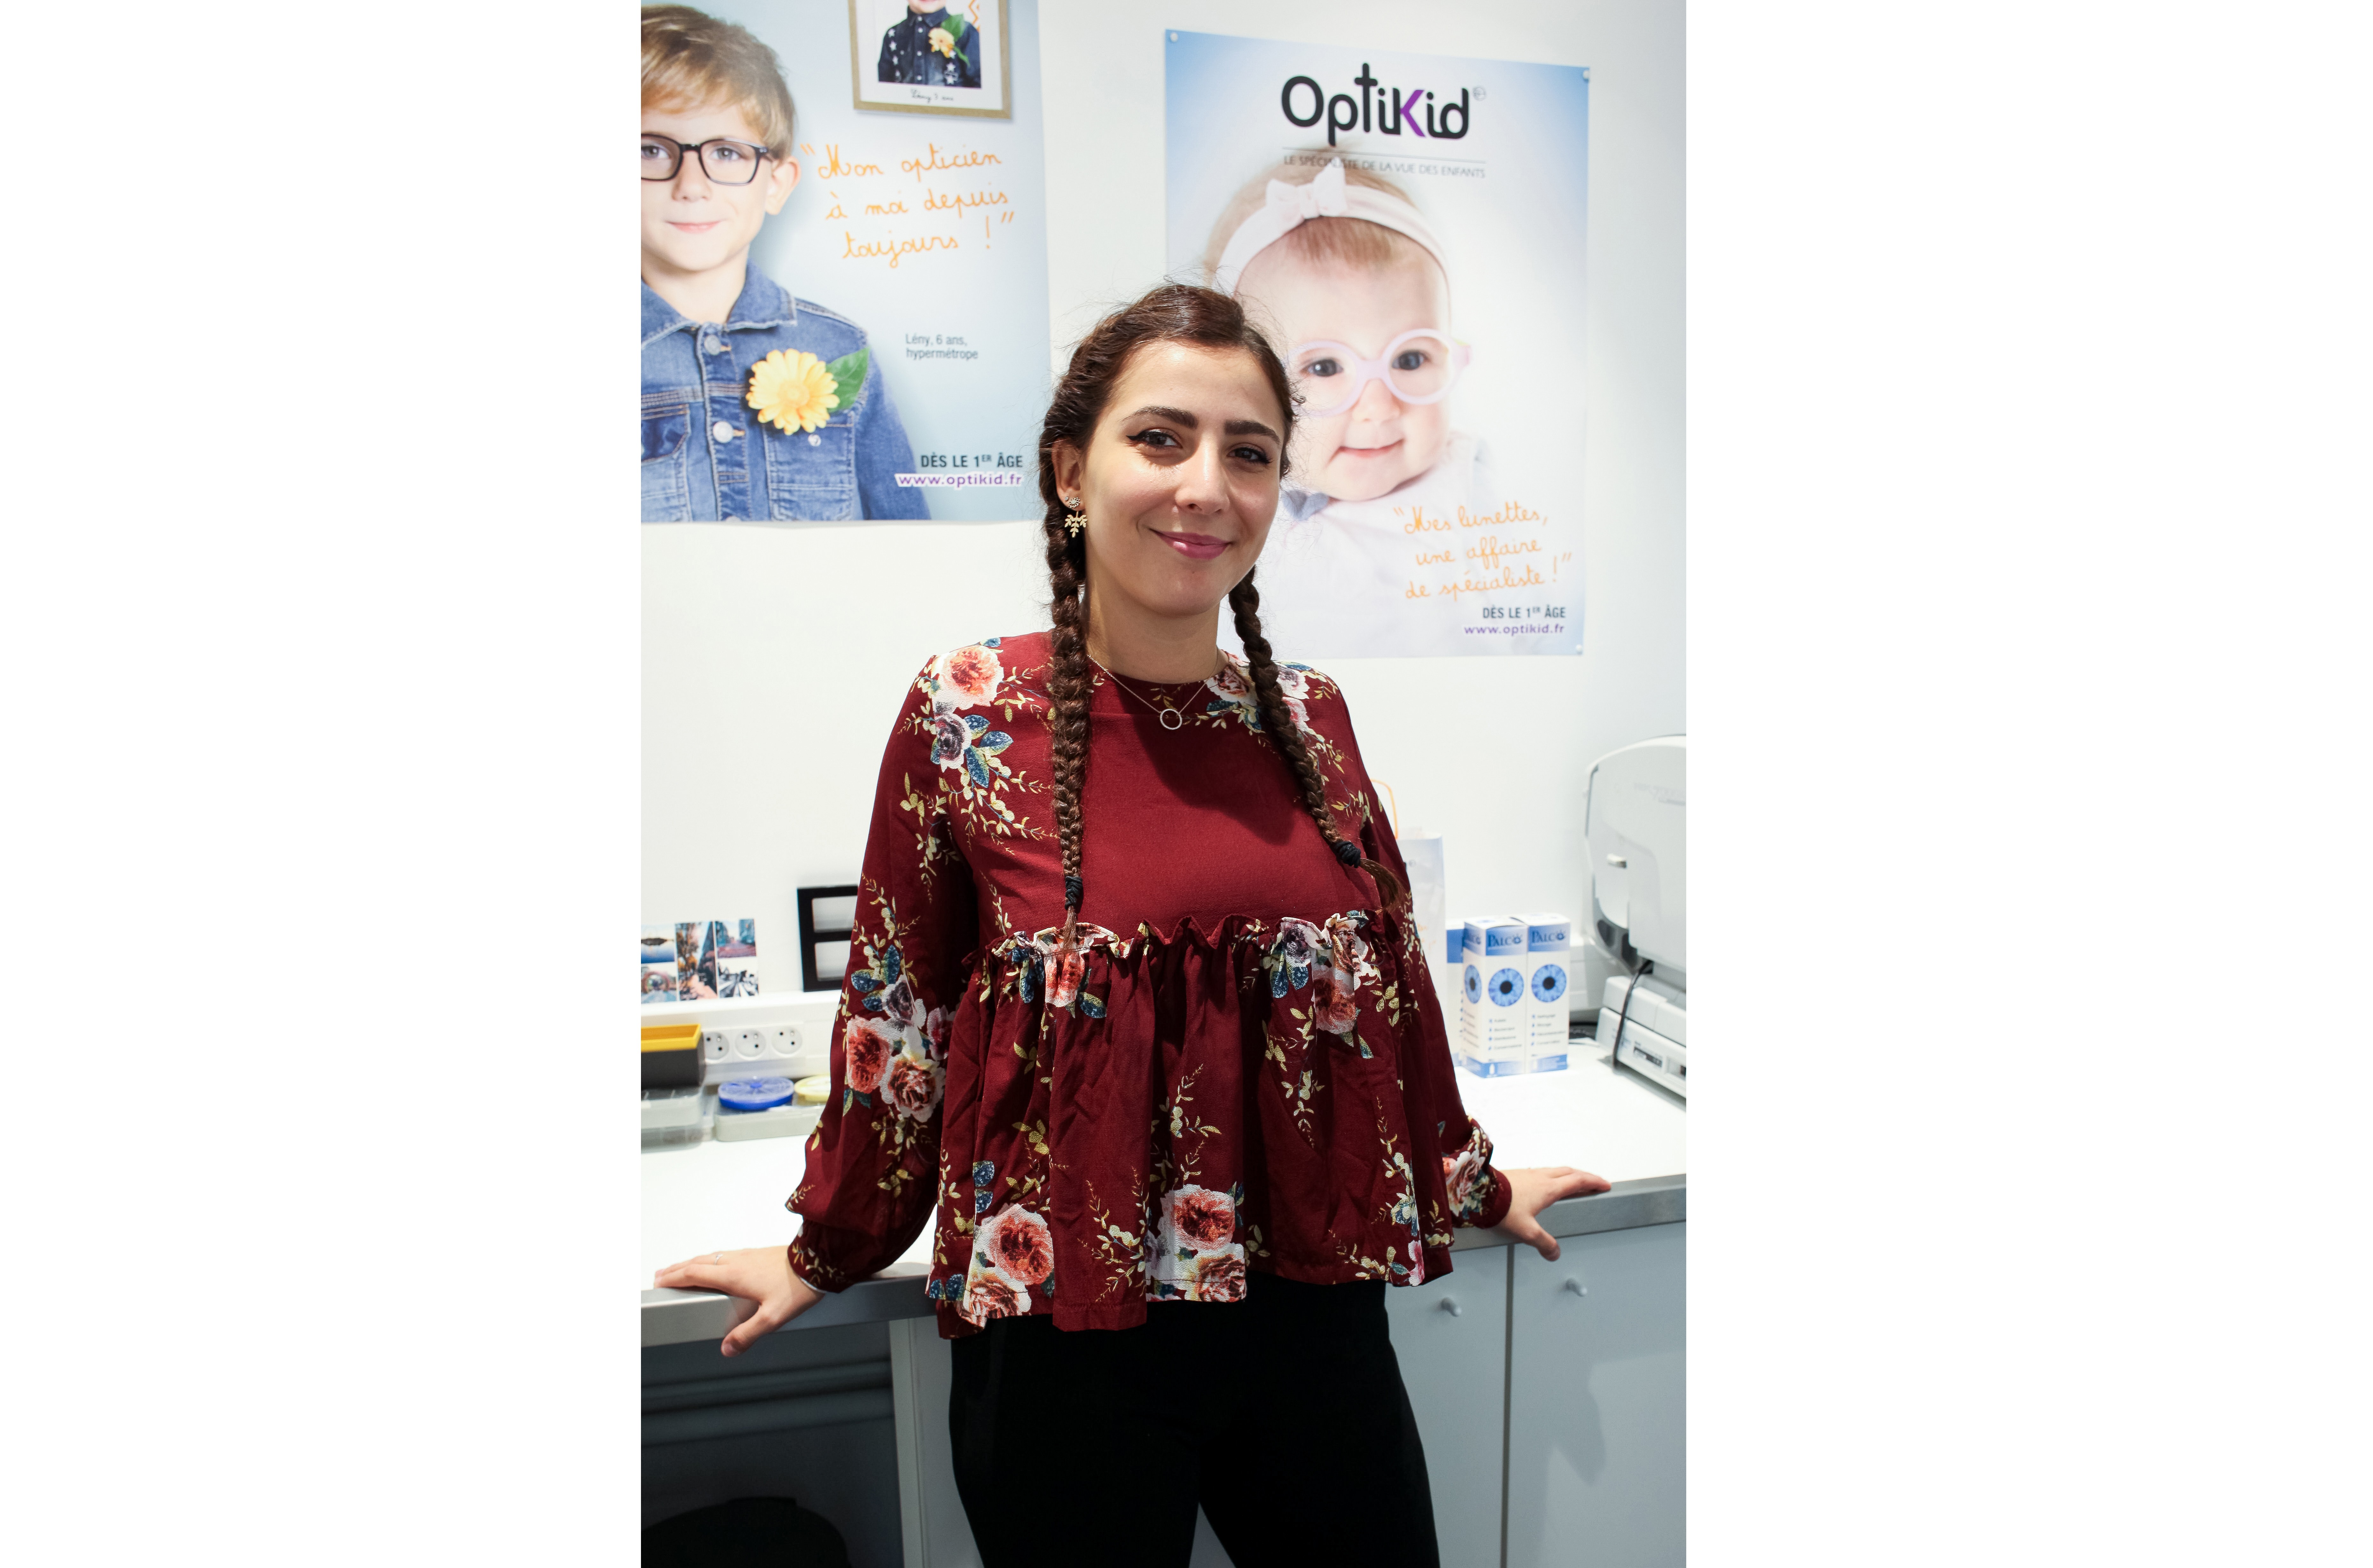 Opticien SOPHIE KIDS spécialiste de l'optique et des lunettes pour enfants à HOUDAN - Optikid